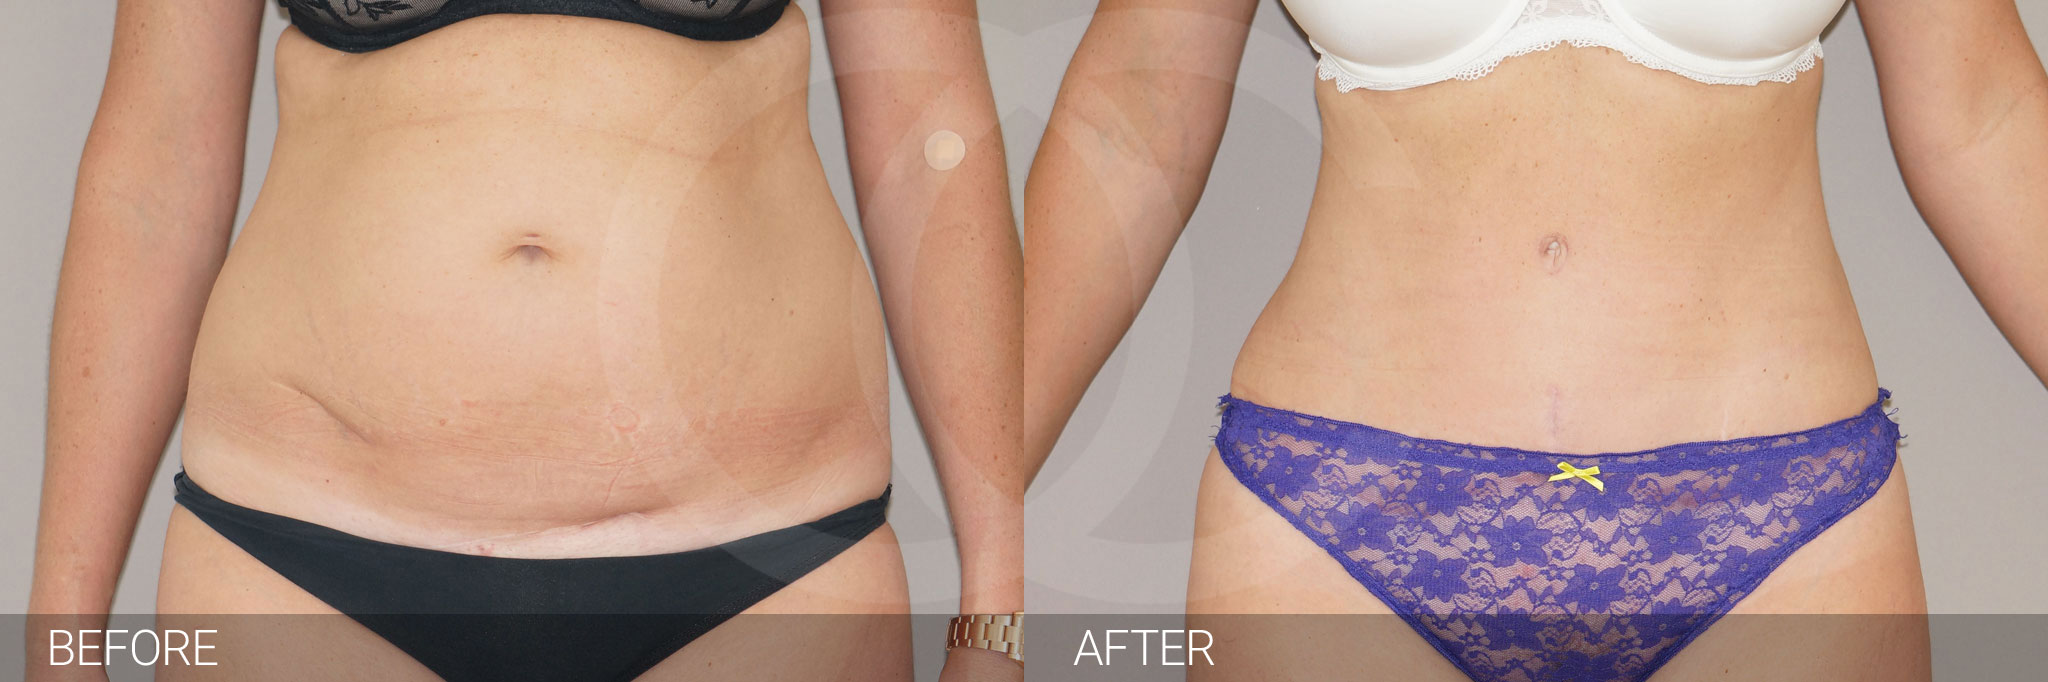 Antes y después Abdominoplastia reducción de abdomen fotos reales de pacientes 4.1 | Ocean Clinic Marbella Madrid